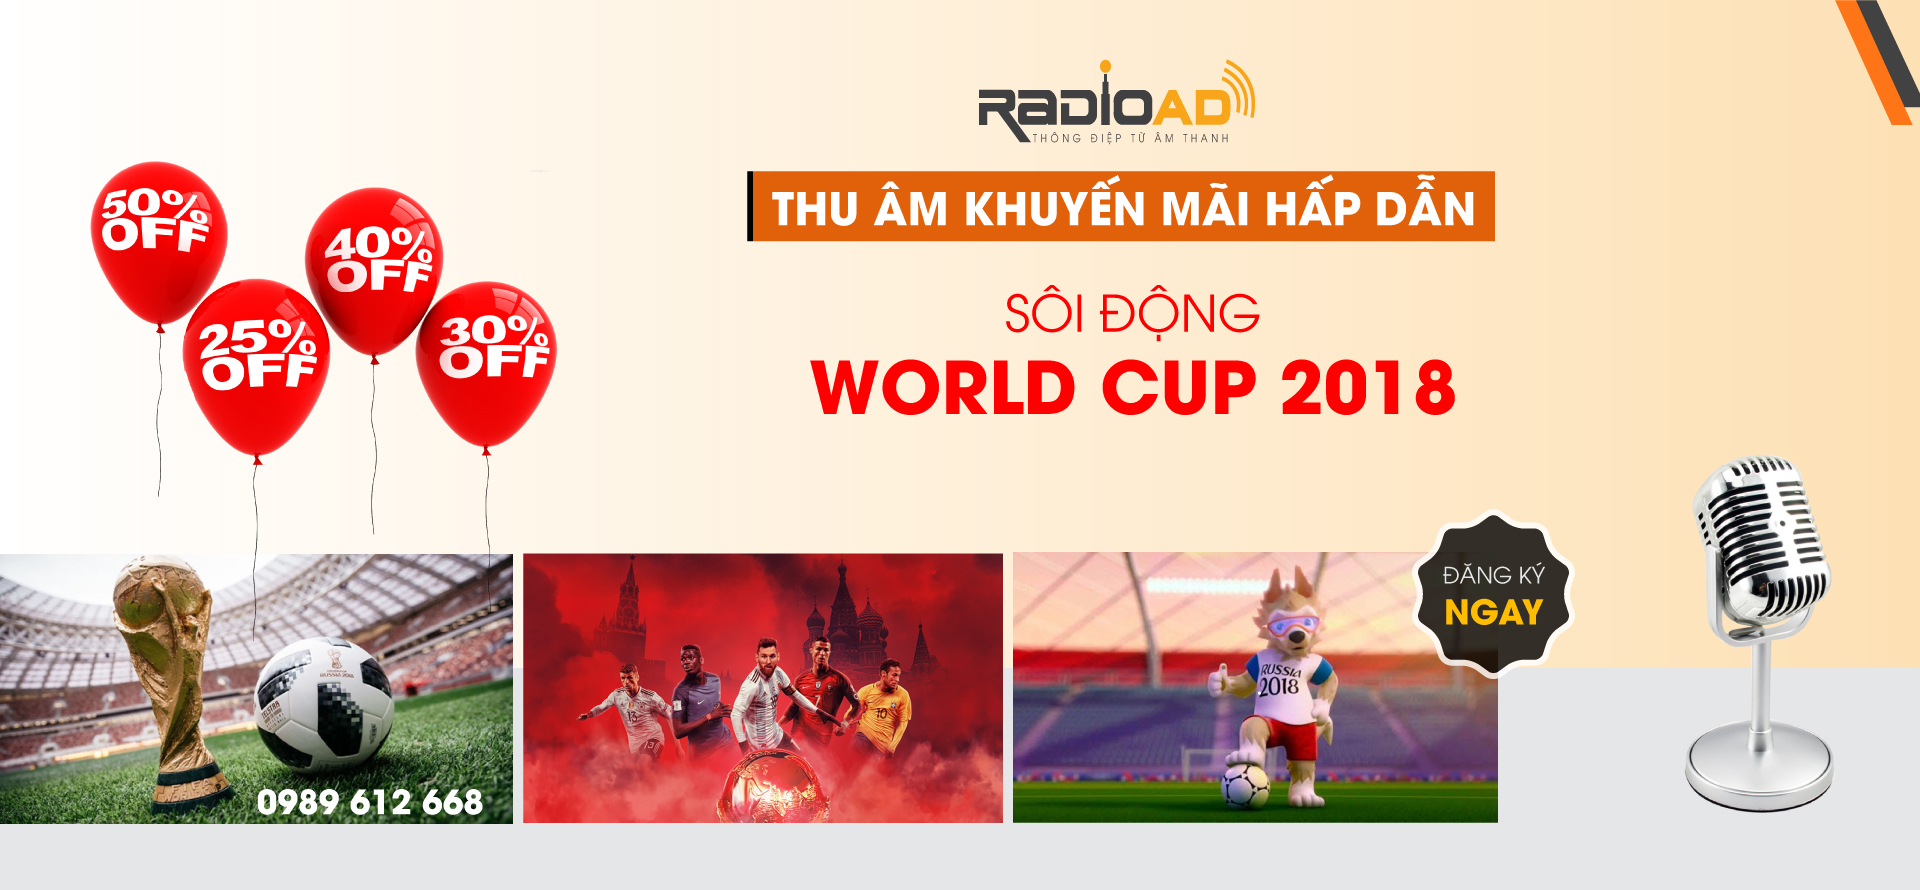 Thu âm khuyến mãi hấp dẫn “Sôi động World Cup 2018”